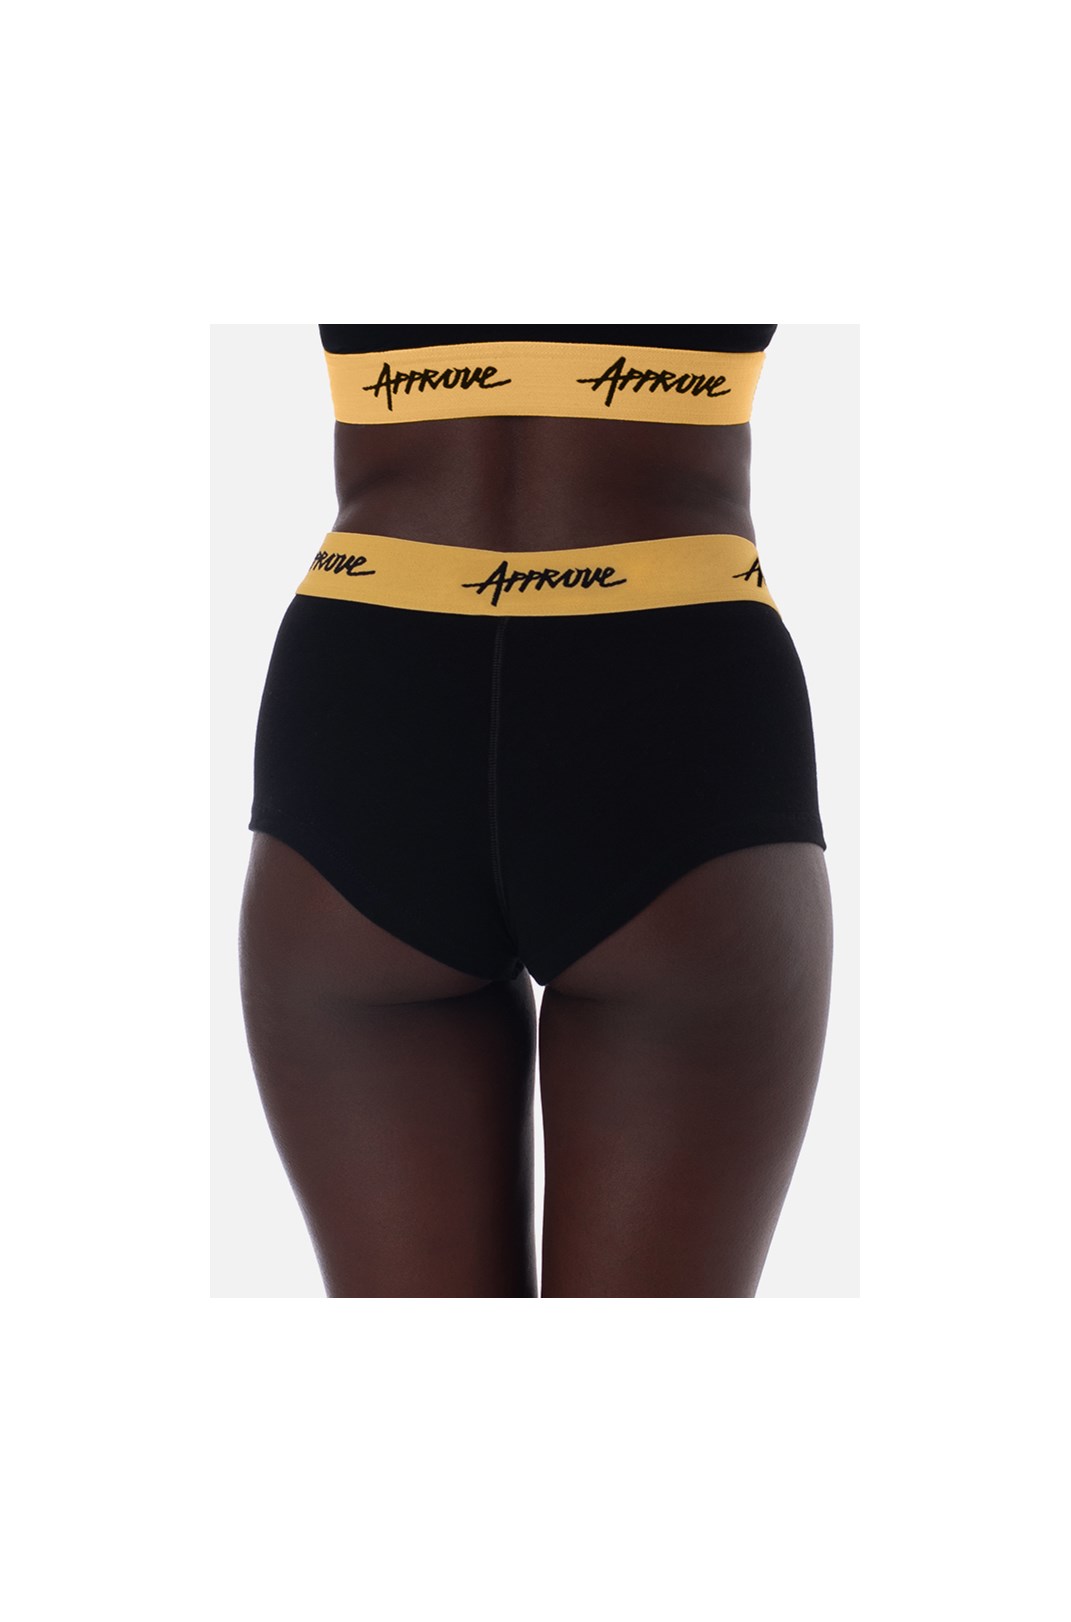 Shorts Underwear Approve Preto com Amarelo